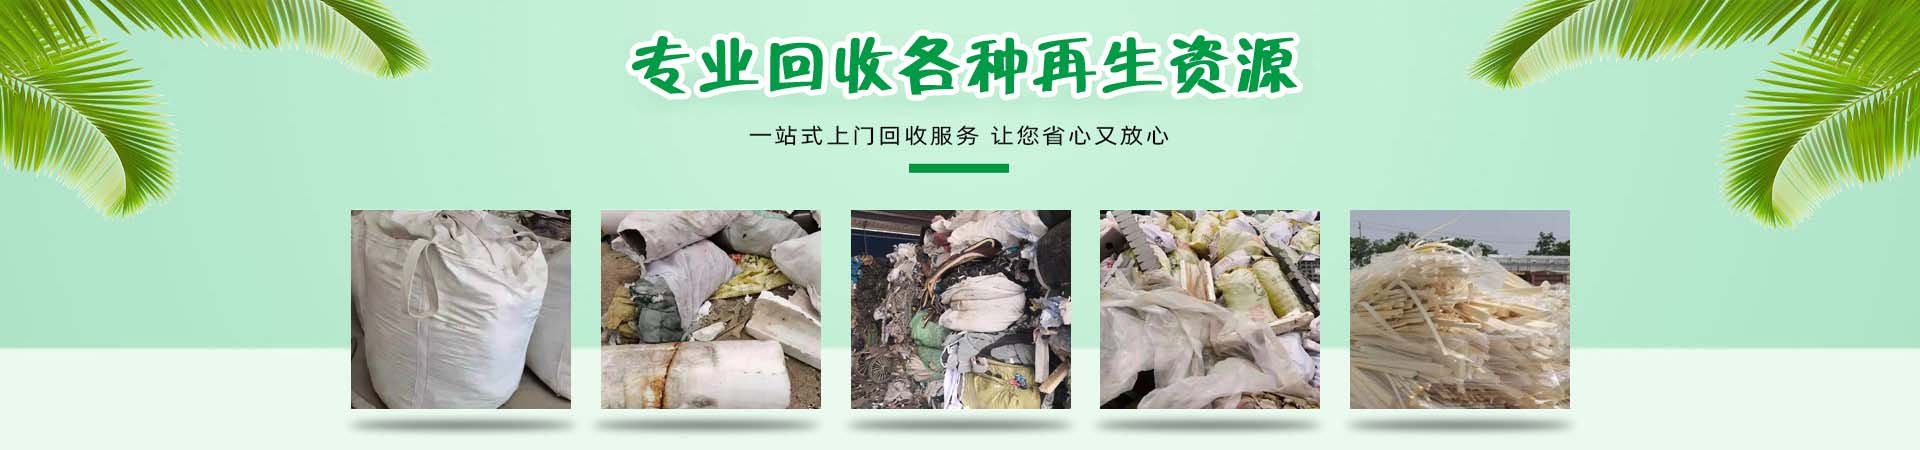 工业垃圾处理、阳江本地工业垃圾处理、阳江、阳江工业垃圾处理